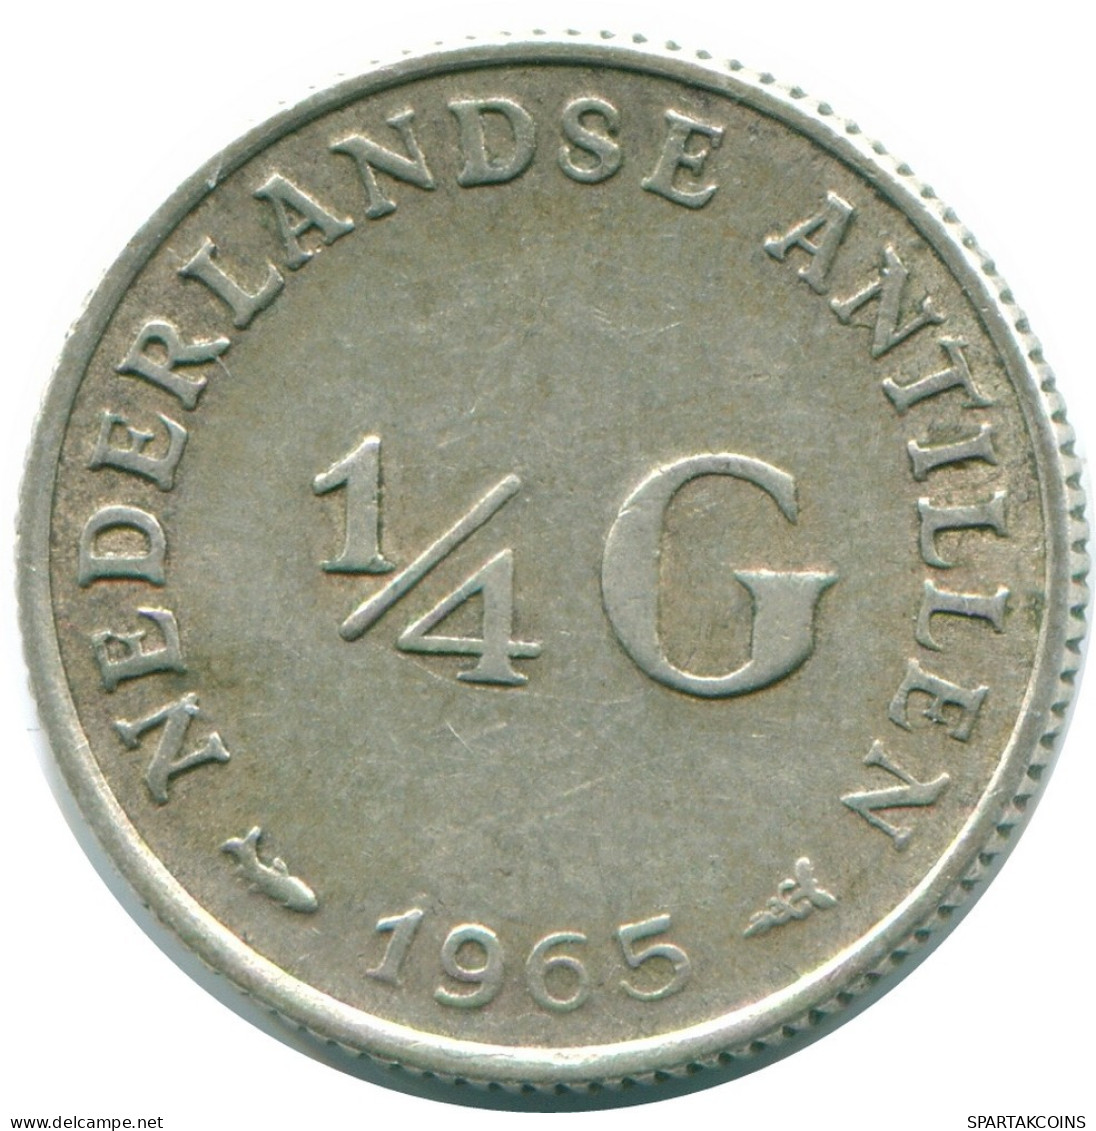 1/4 GULDEN 1965 NIEDERLÄNDISCHE ANTILLEN SILBER Koloniale Münze #NL11426.4.D.A - Niederländische Antillen